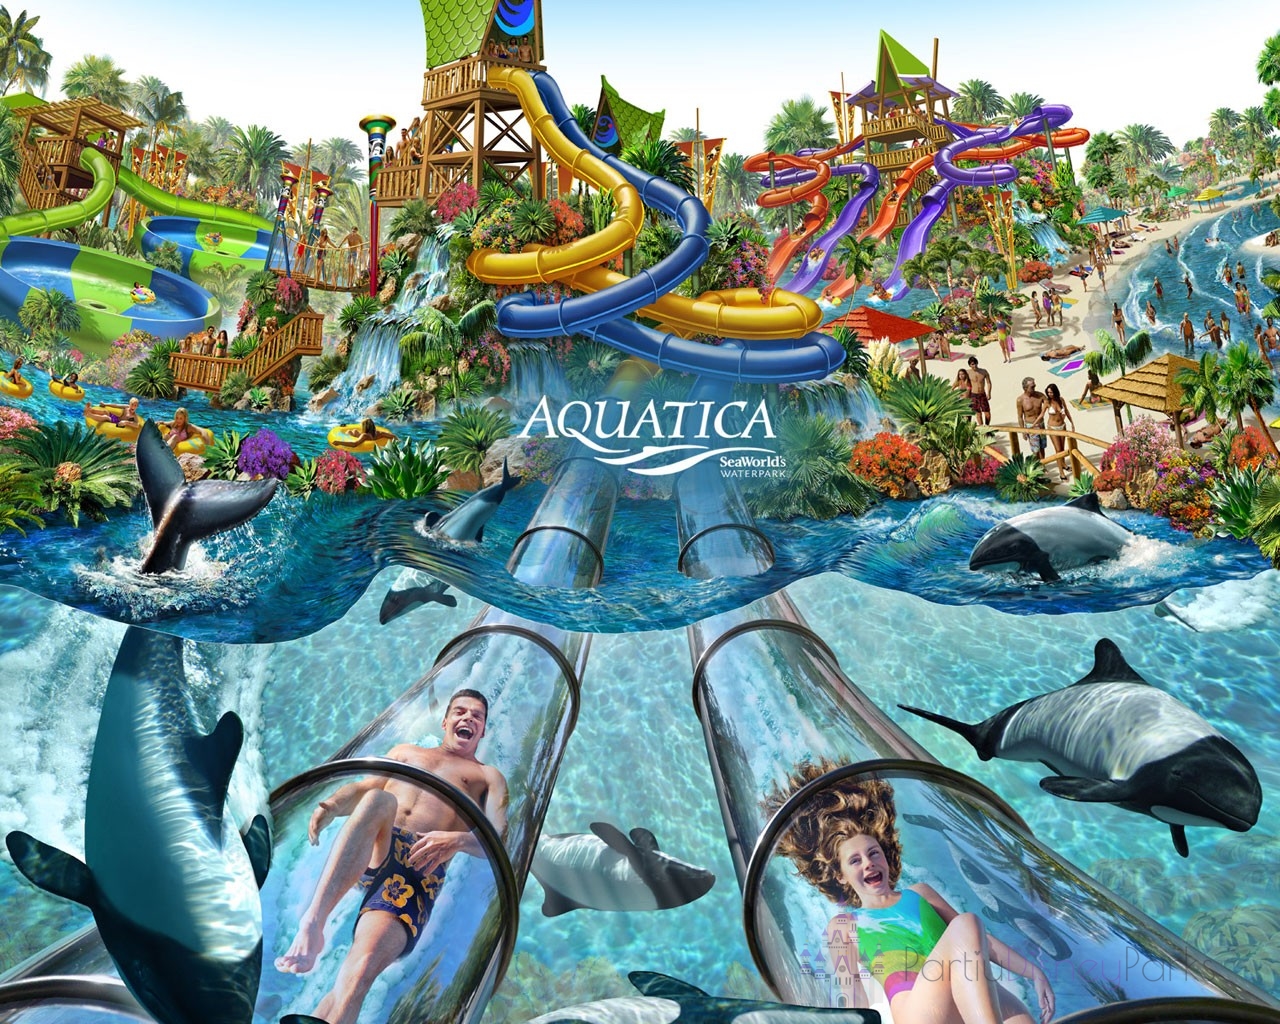 Parque Aquatica - Parque Aquatico do Seaworld